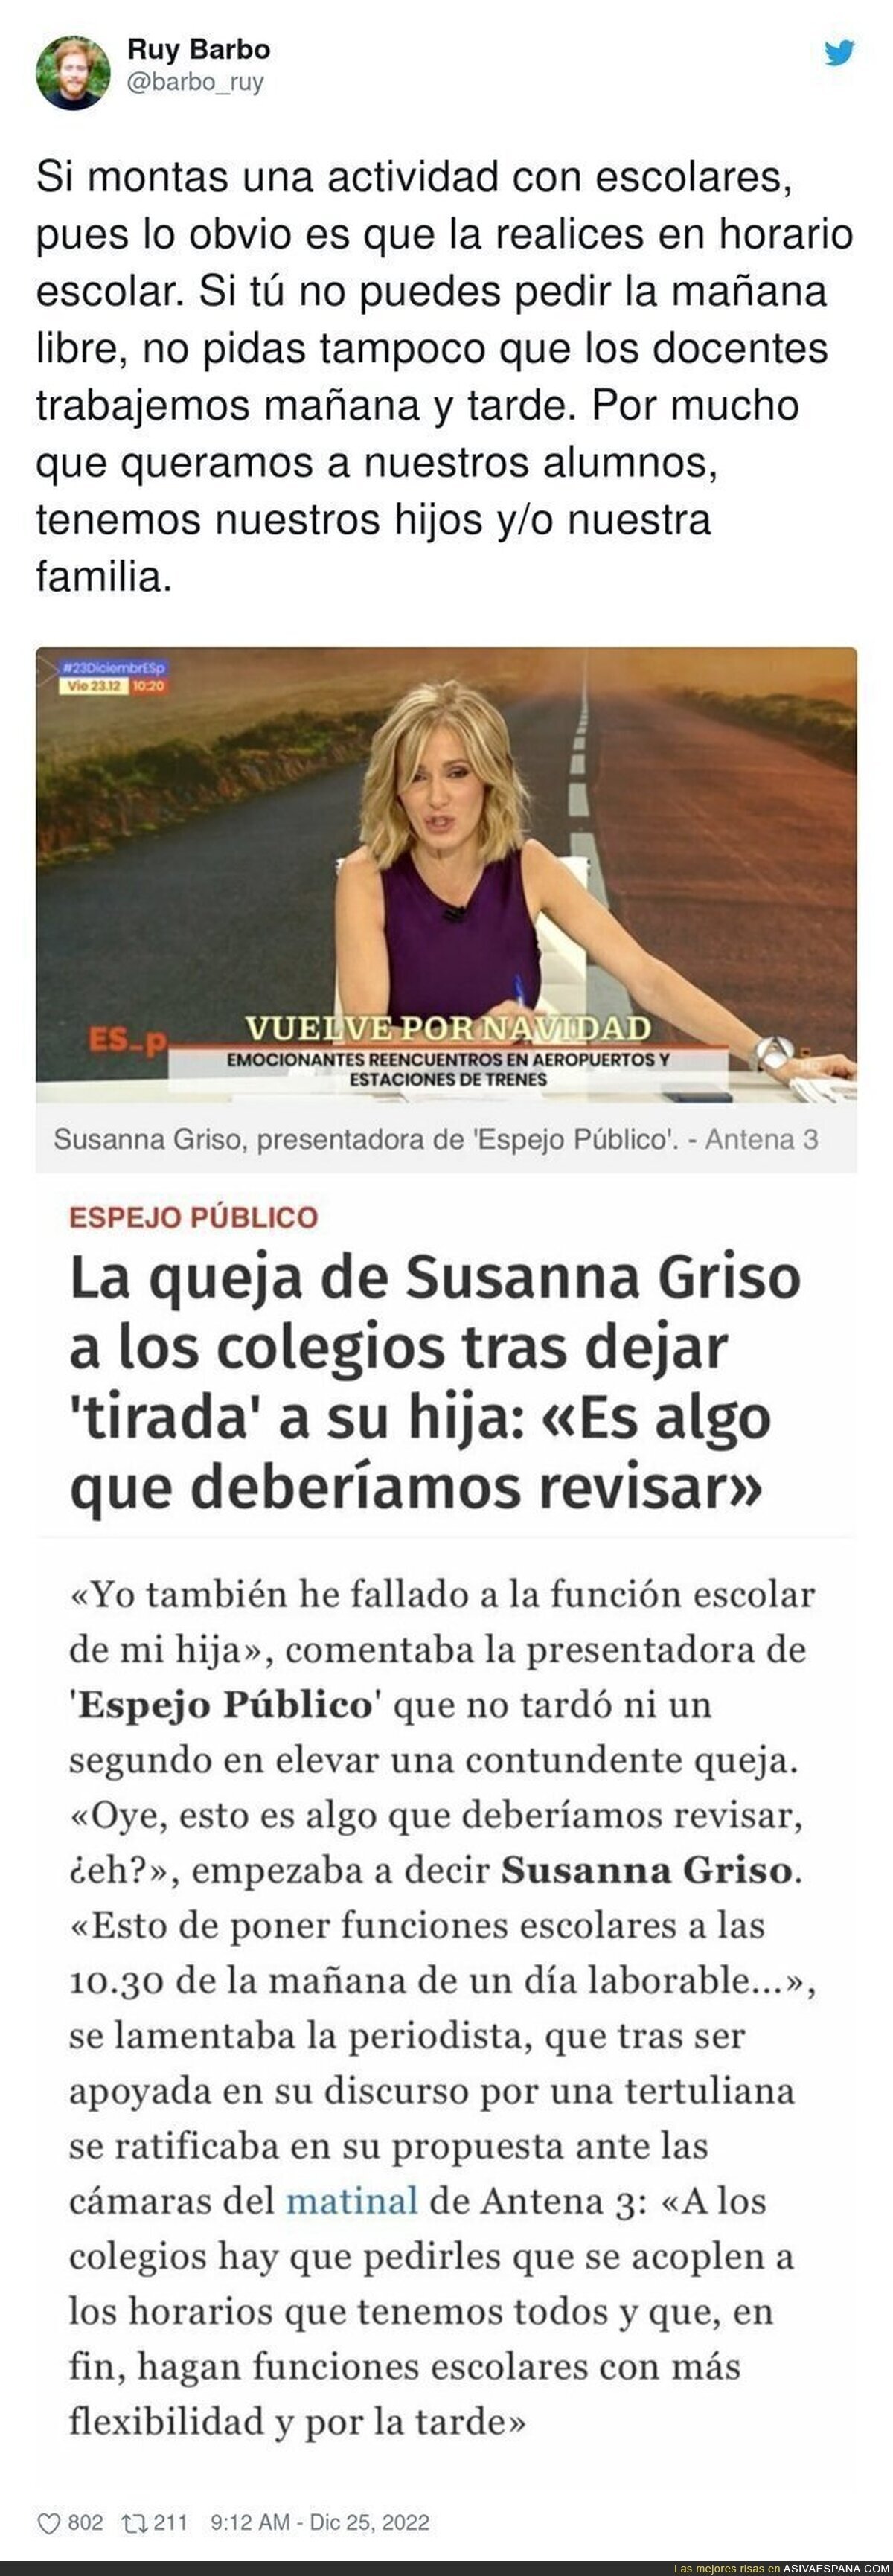 La reclamación de Susanna Griso a los colegios que está levantando mucha polémica